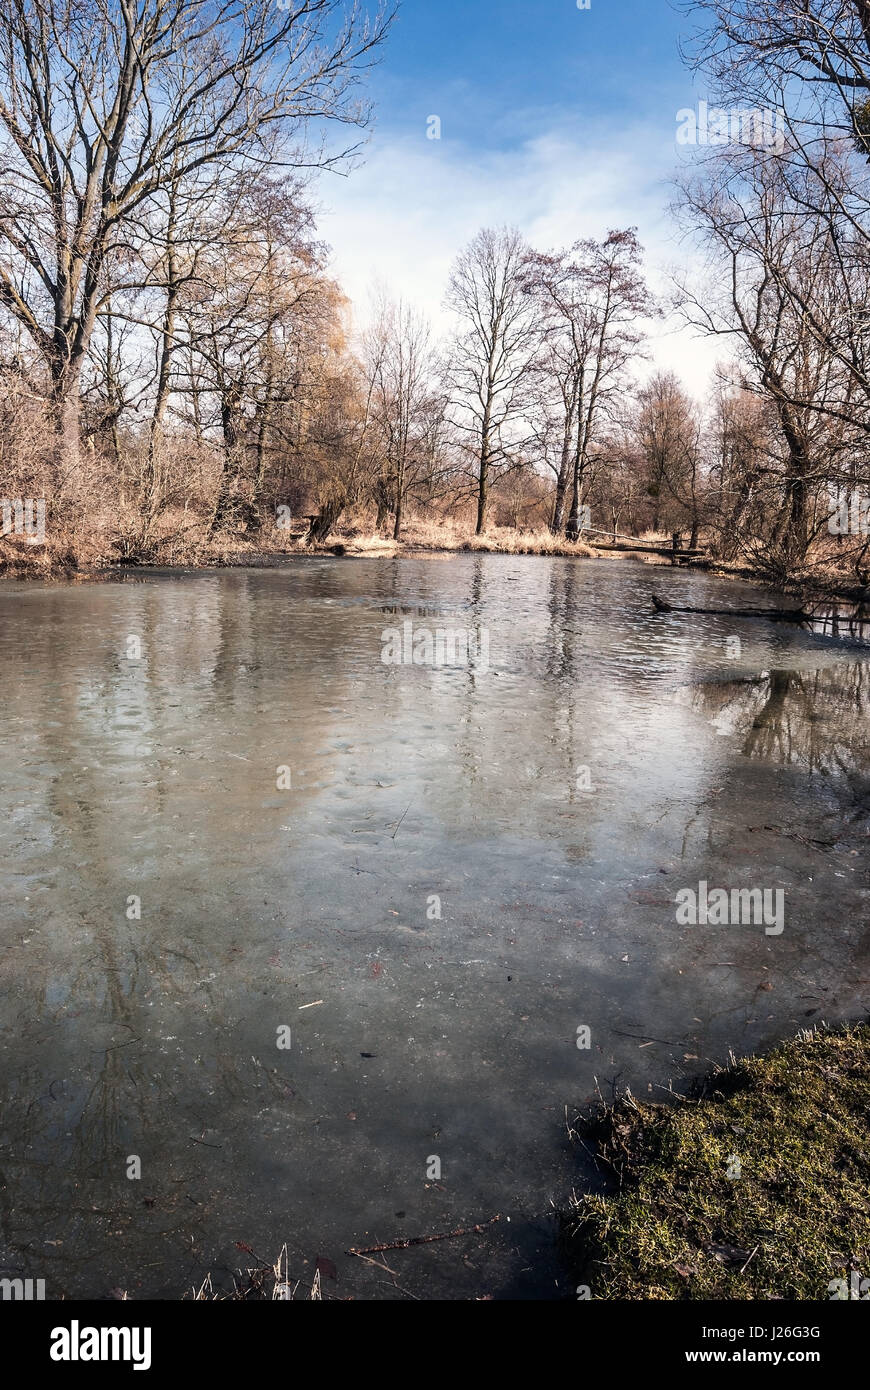 Teilweise slanaky River Lake mit Bäumen und blauer Himmel im Frühjahr Landschaftsschutzgebietes poodri in der Nähe von studenka Stadt in der Tschechischen Republik eingefroren Stockfoto